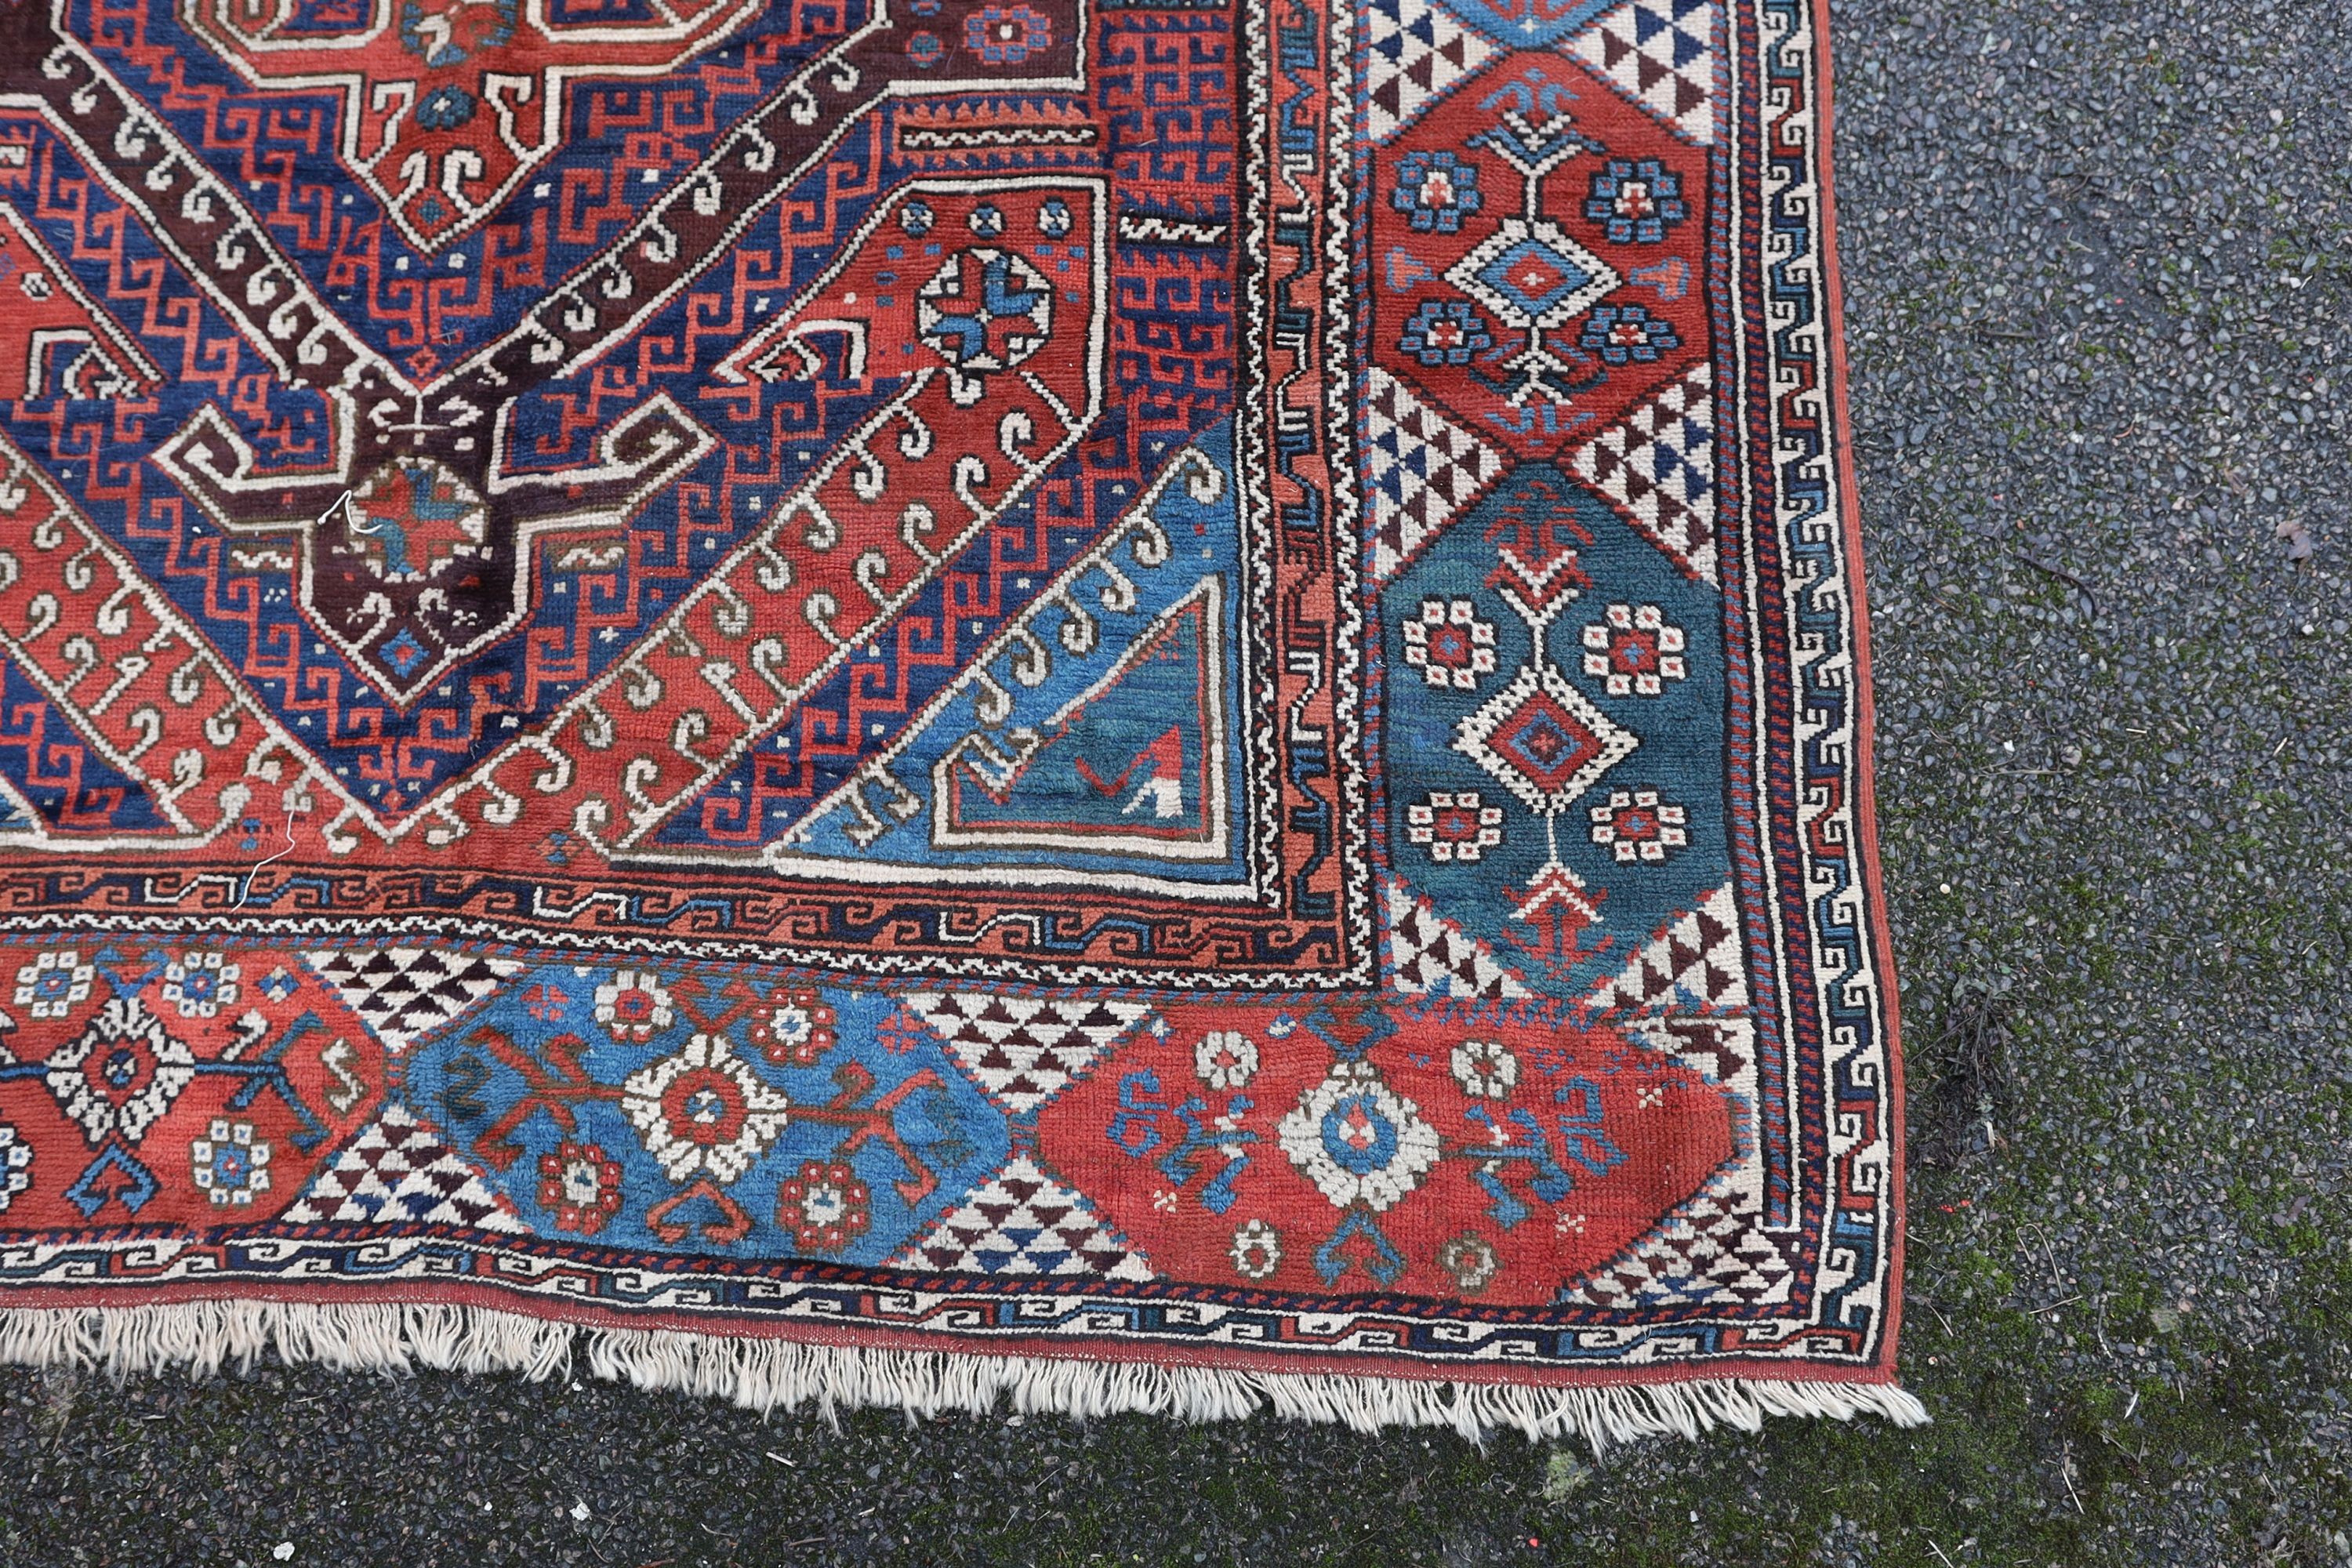 A Bergam Turkish blue ground rug 254 x 198cm